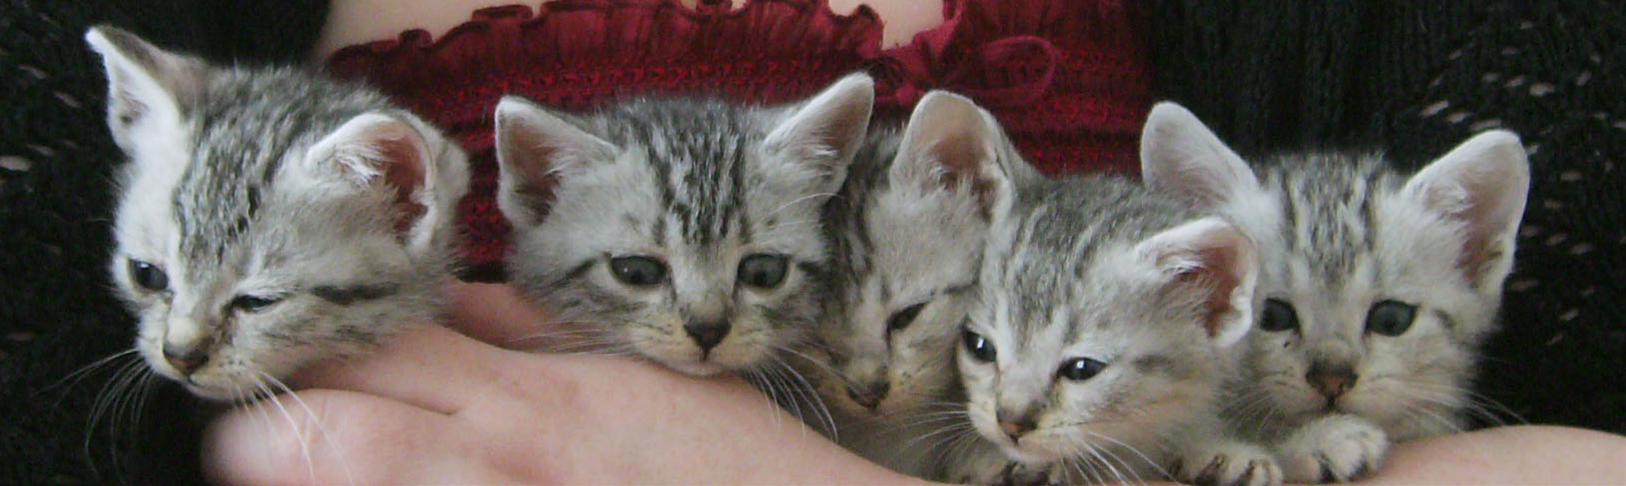 かわいい猫画像No.12「５匹の赤ちゃん子猫・仲良し兄弟」